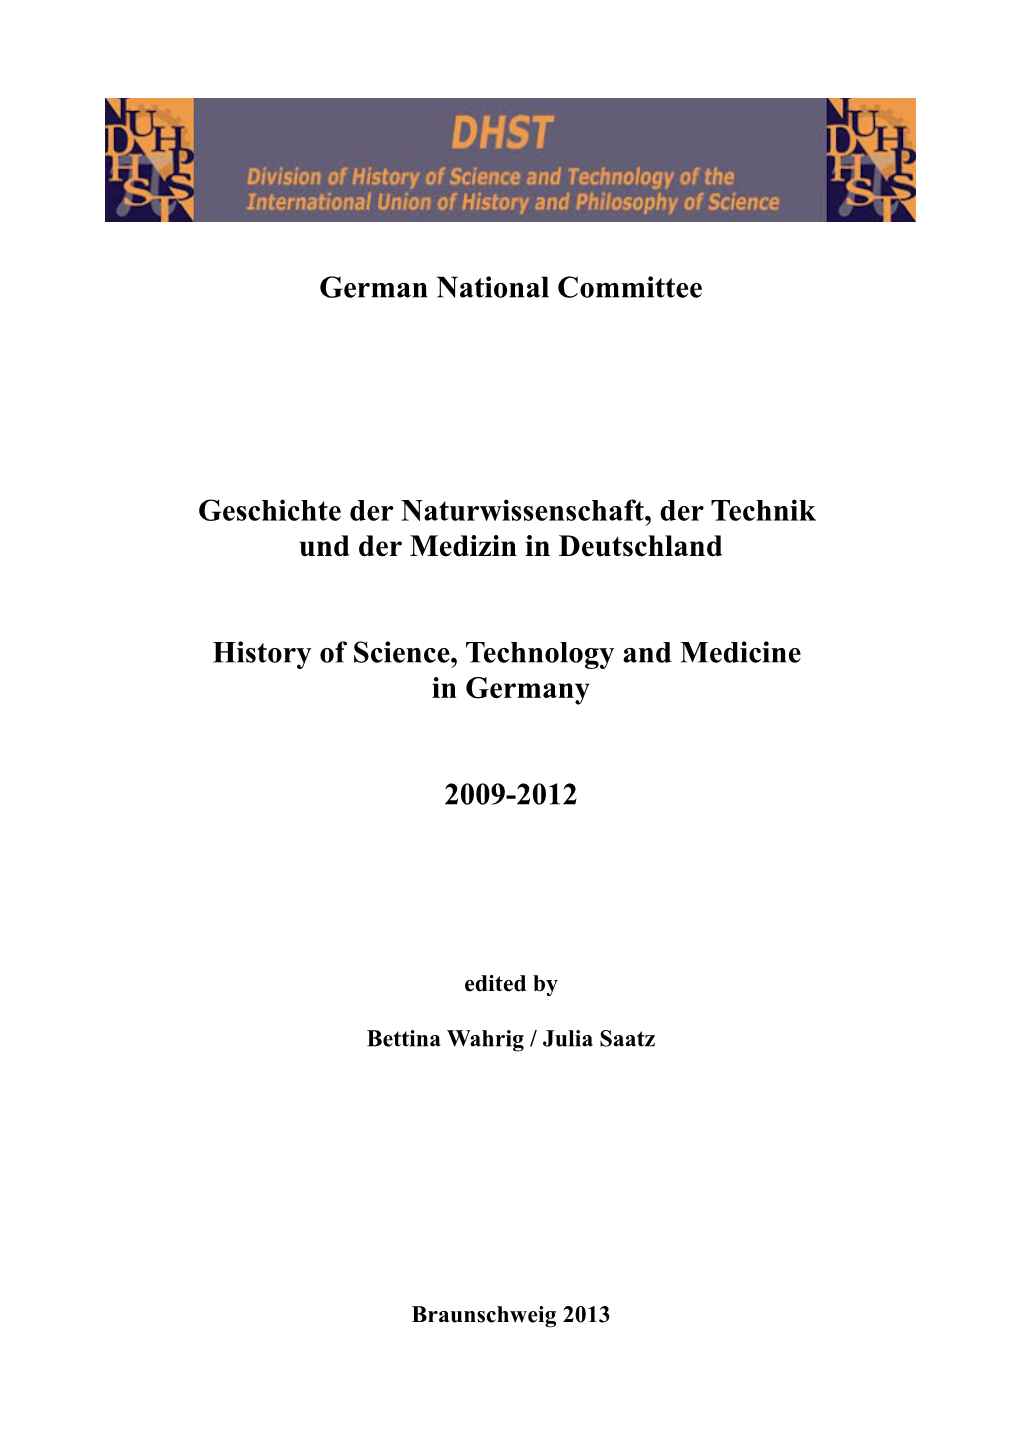 German National Committee